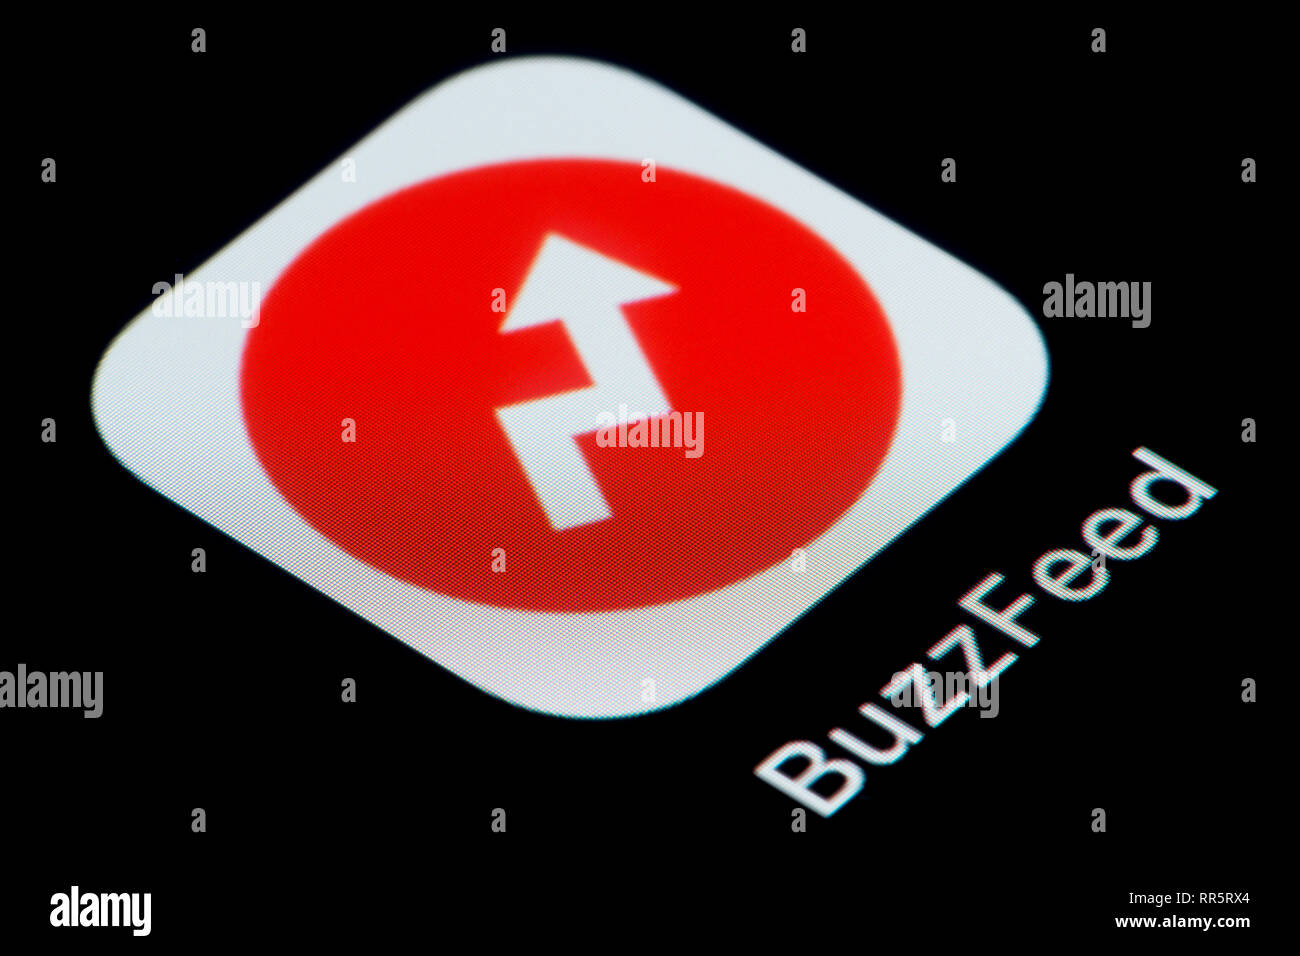 Un gros plan de l'icône de l'application Buzzfeed, comme vu sur l'écran d'un téléphone intelligent (usage éditorial uniquement) Banque D'Images